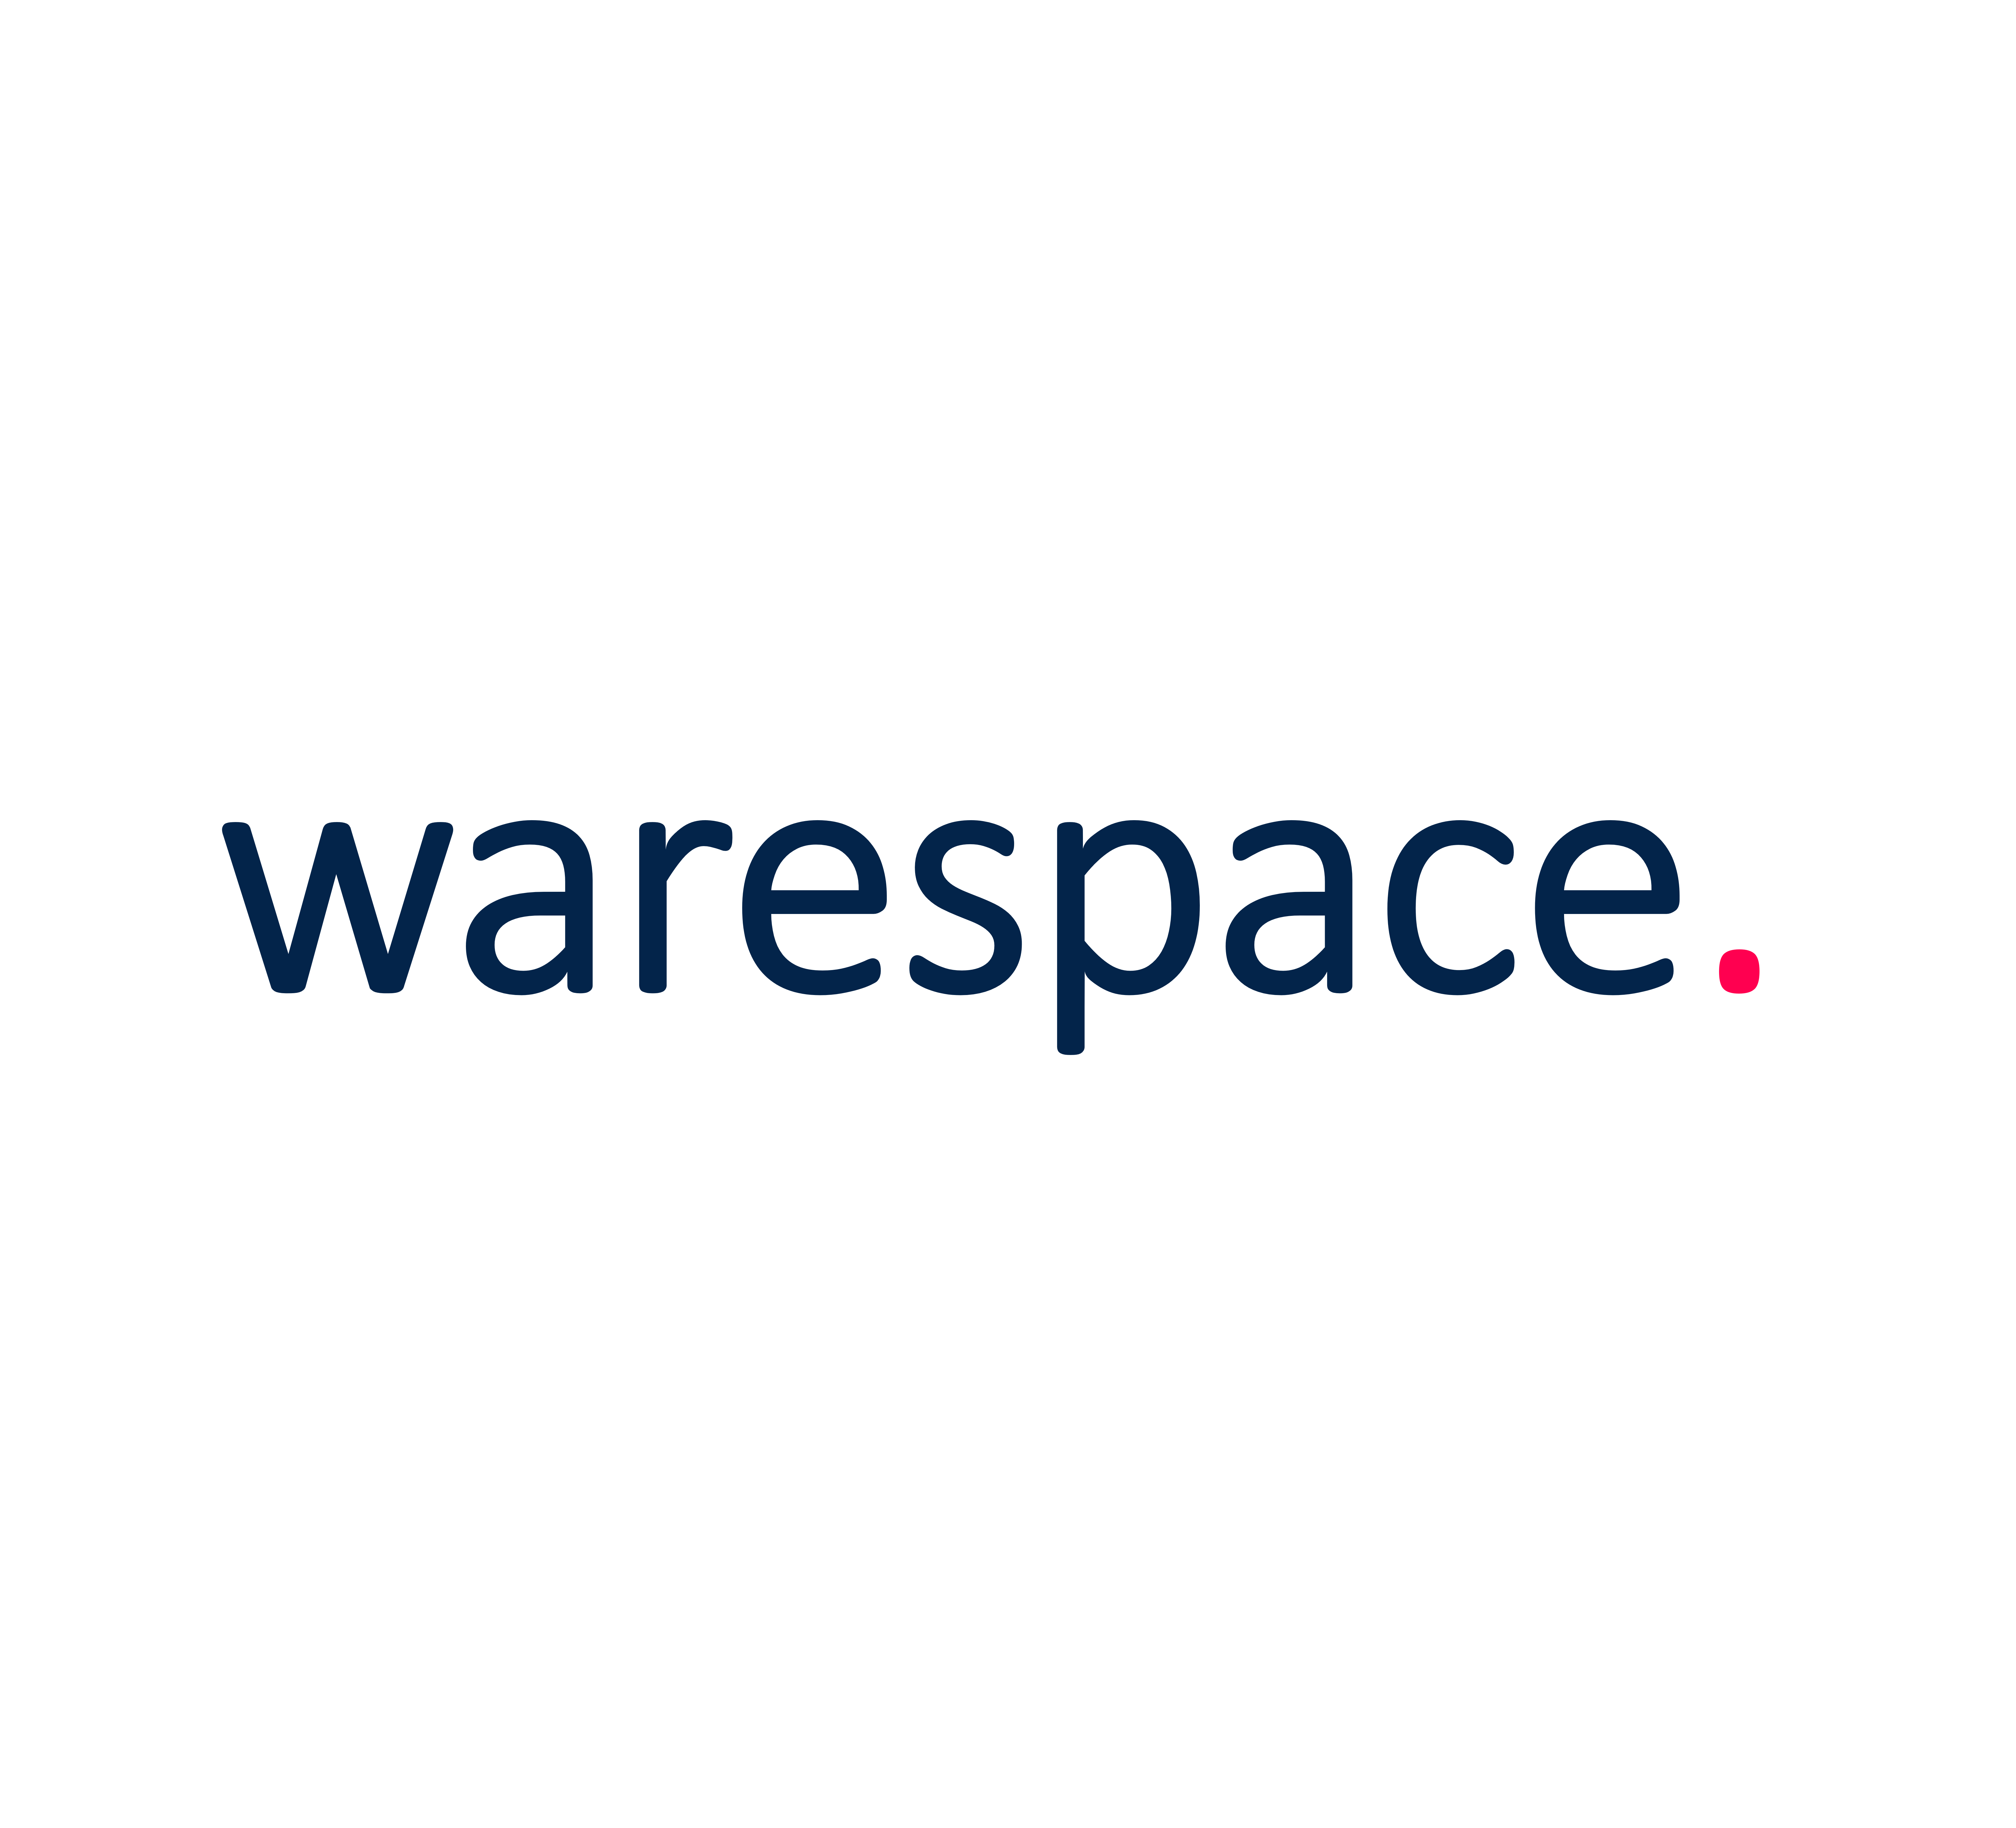 warespace